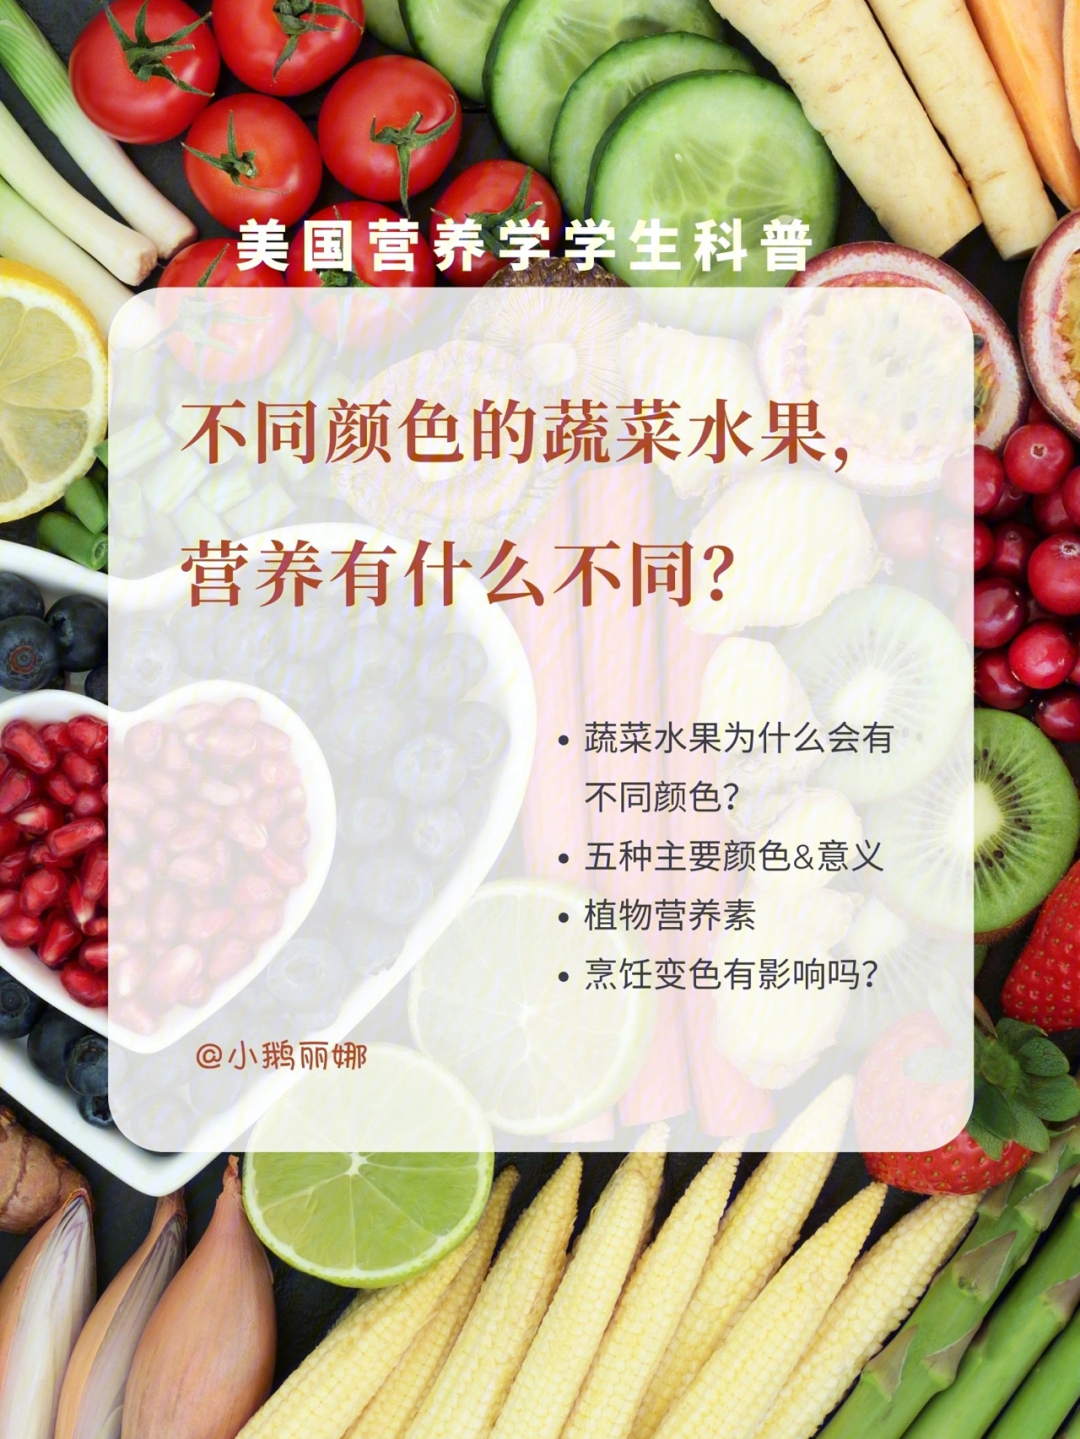 91夏日炎炎,容易缺水的季节更需要从五颜六色的蔬菜水果中补充额外